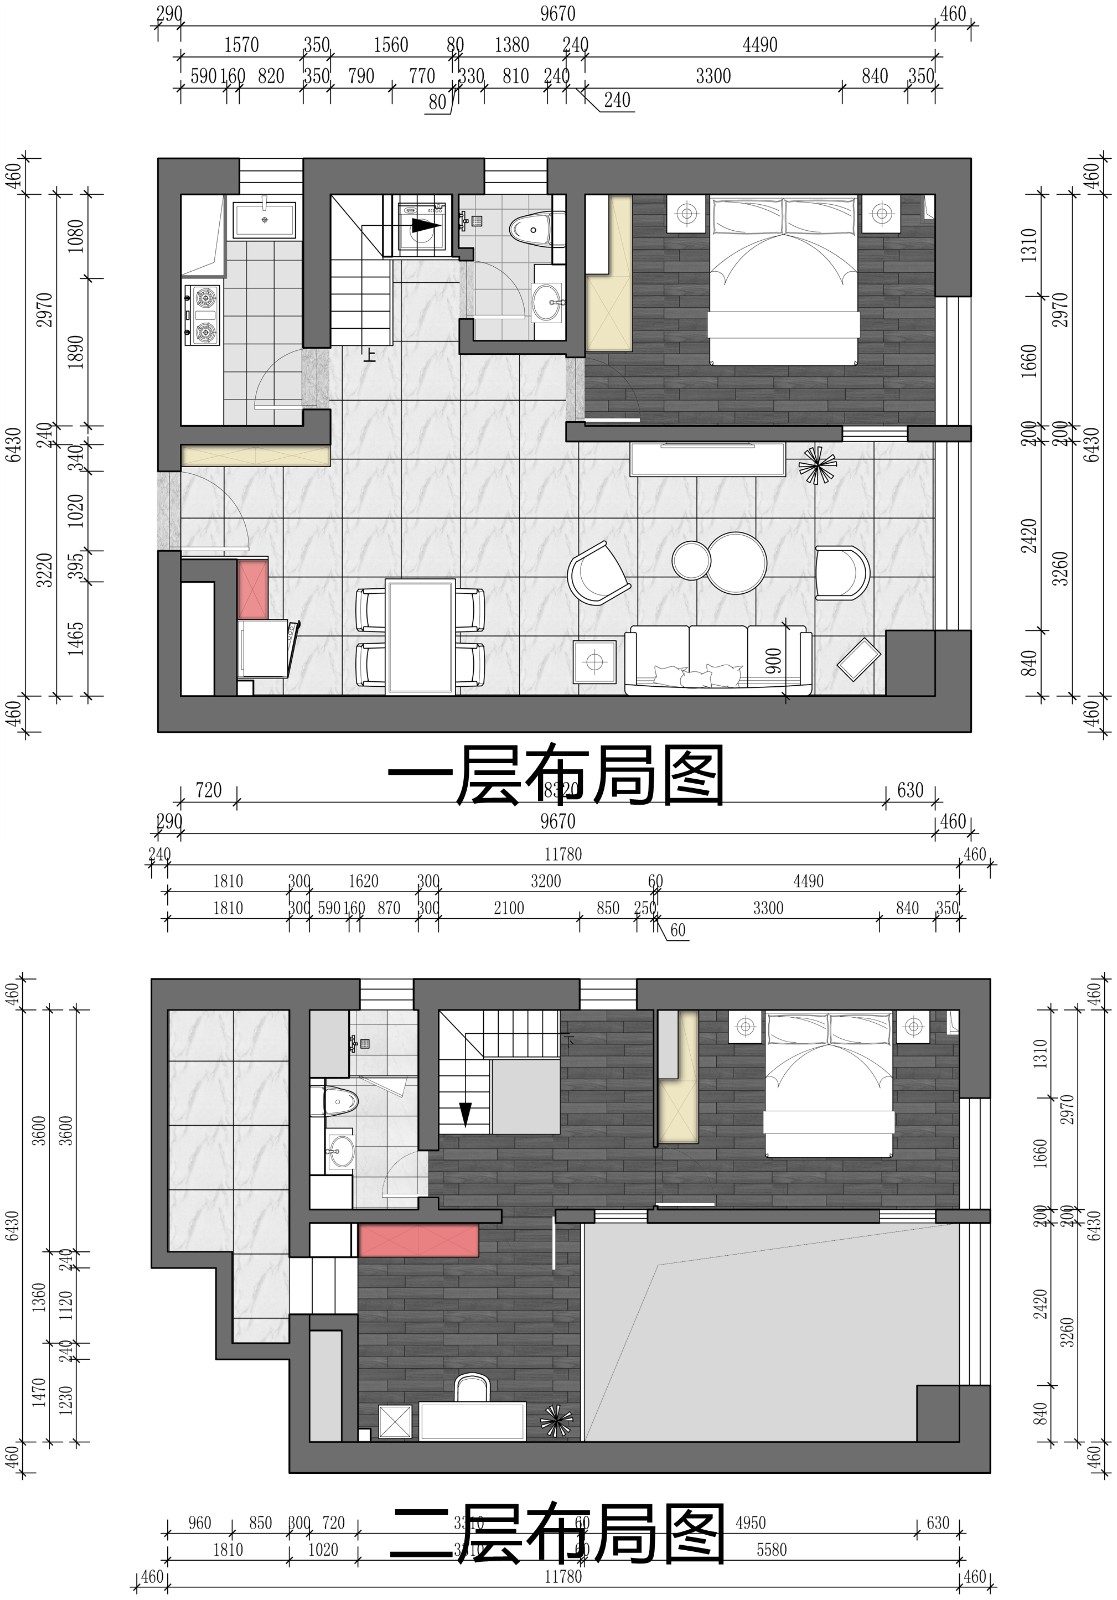 200现代Loft装修效果图,珠江四季城|现代风格装修案例效果图-美广网